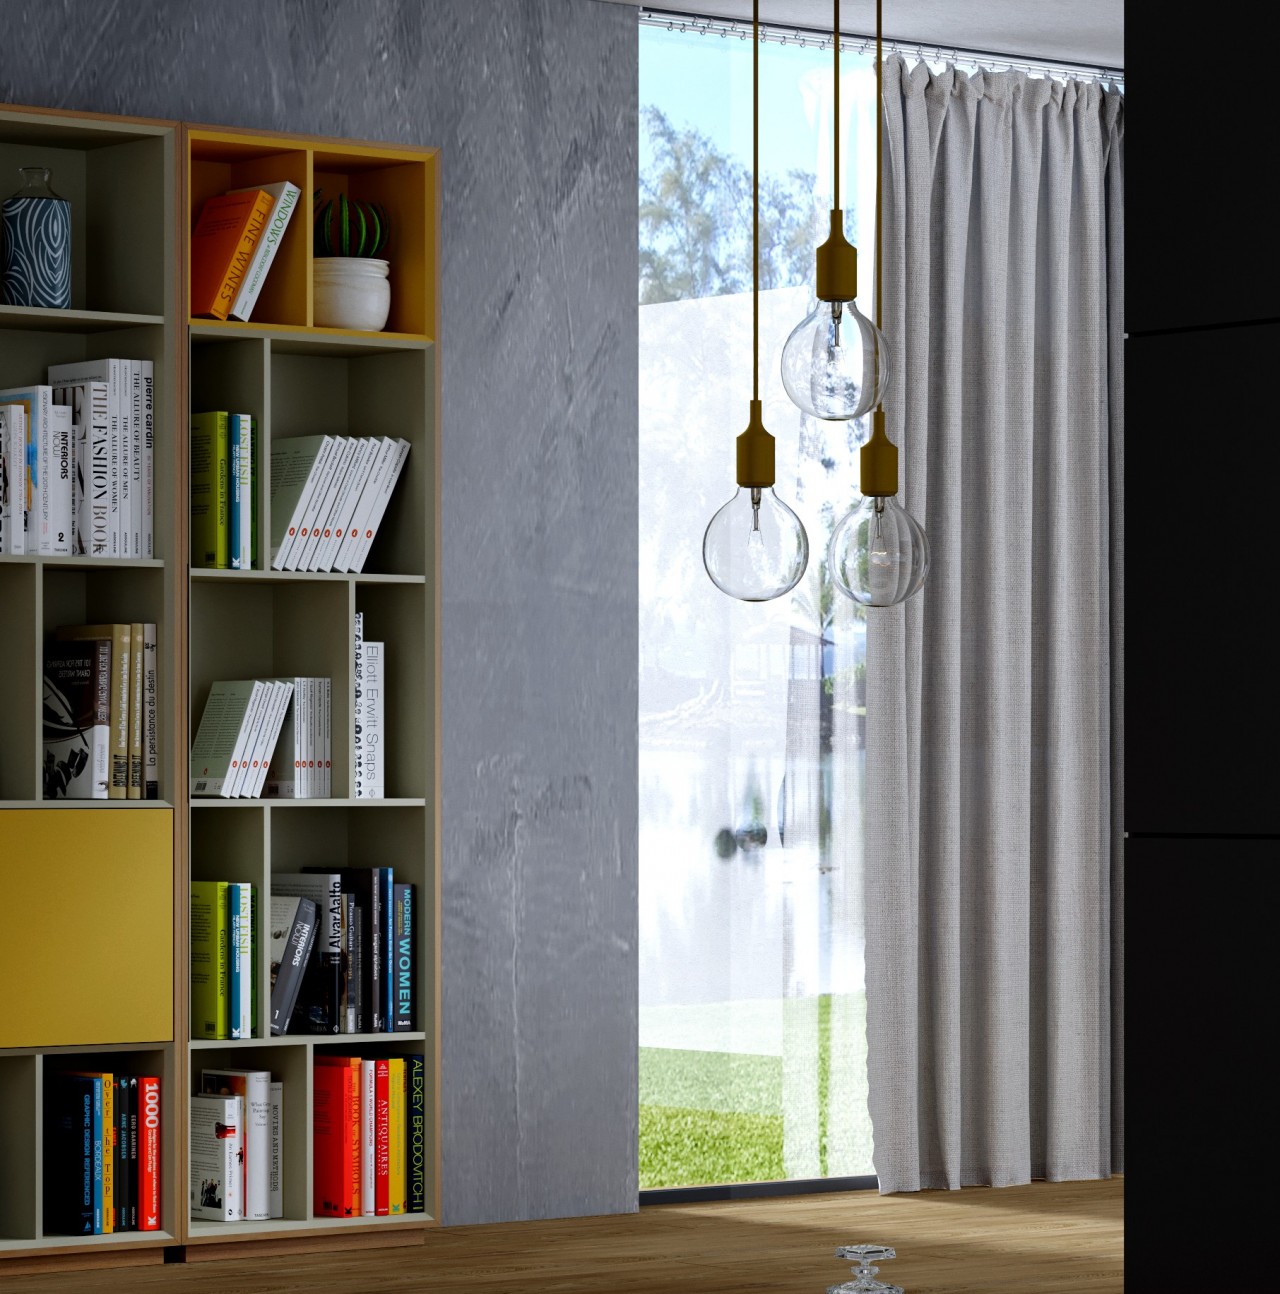 A estante Enkel EV01 é a solução perfeita para a organização da sua casa. Seu design moderno e prático permite armazenar de maneira simples e elegante os seus objetos favoritos.